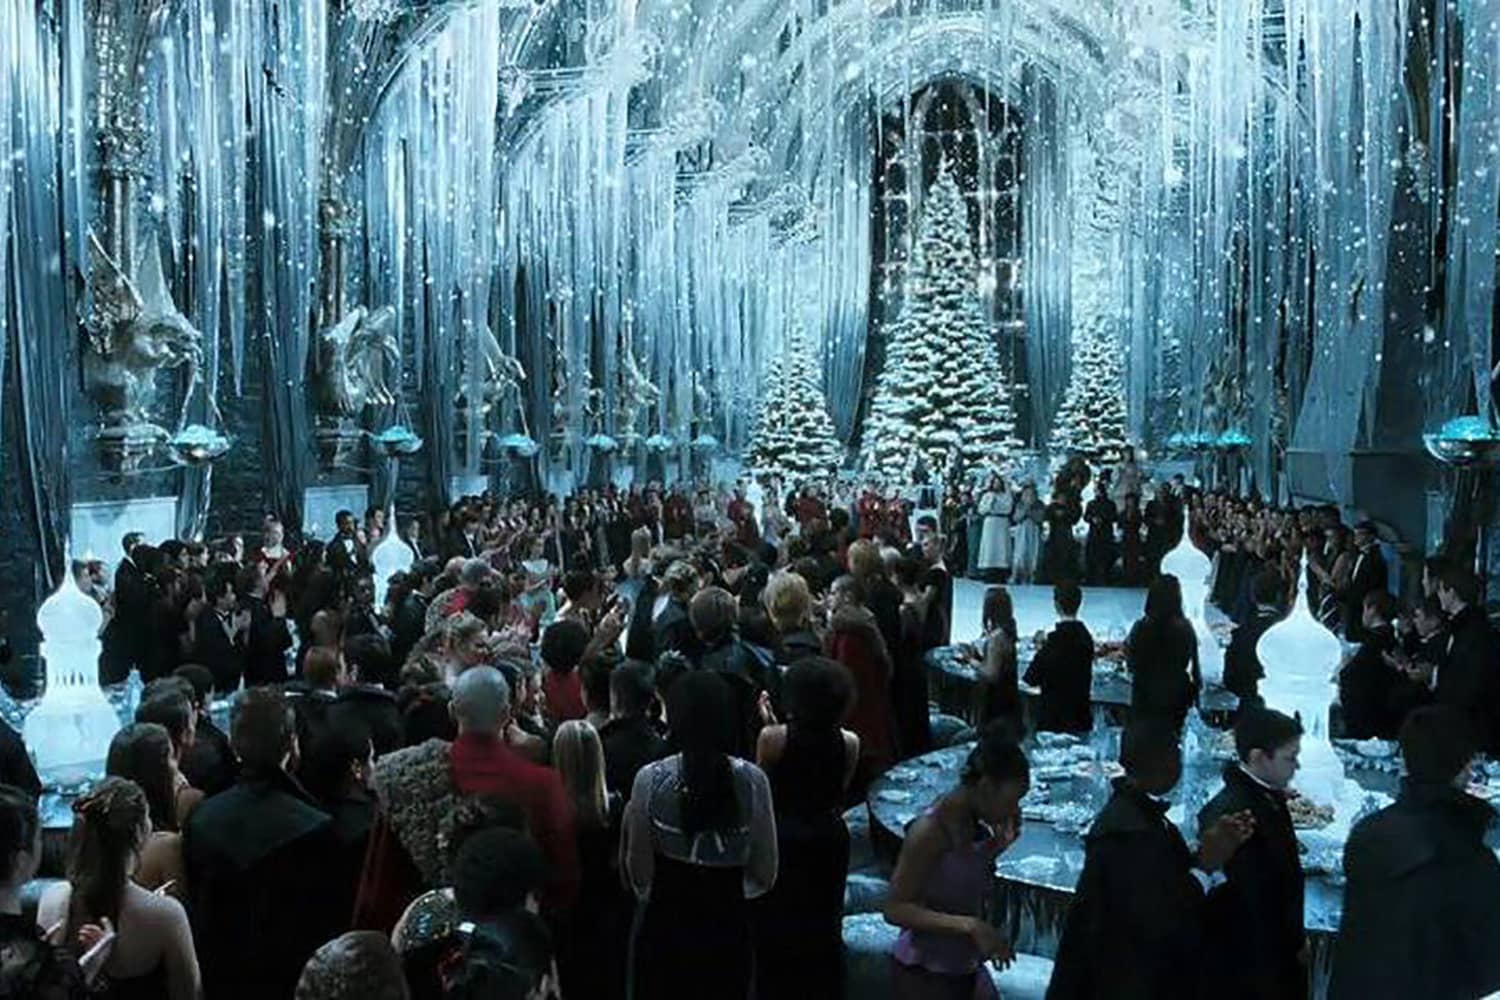 Hogwarts/Harry Potter themed Christmas dinner  Harry potter christmas  decorations, Hogwarts christmas, Harry potter themed christmas